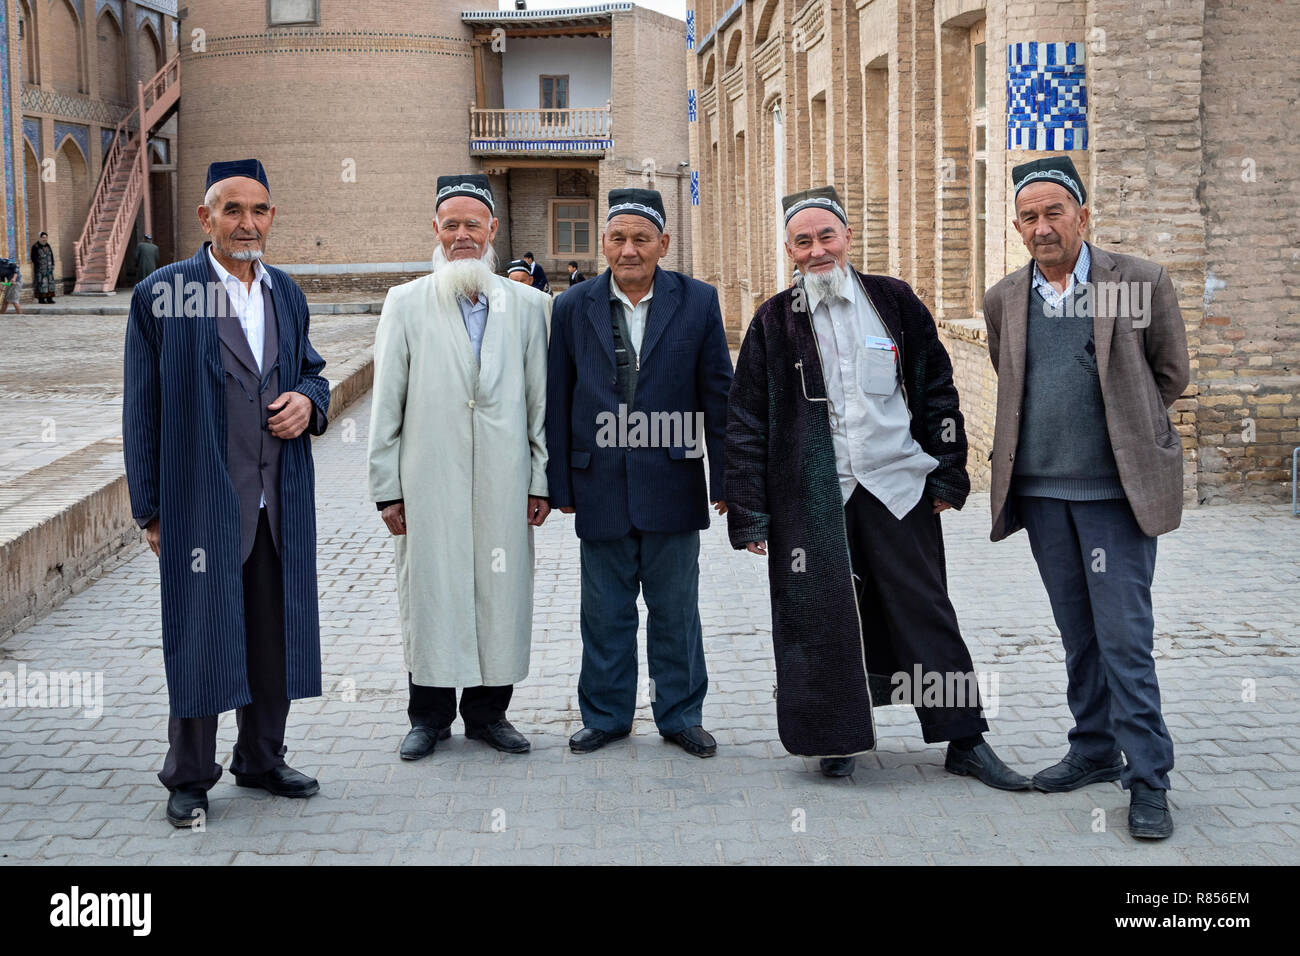 Khiva, Uzbekistan - 17 Aprile 2018: uomini anziani in tradizionali abiti uzbeko in posa vicino alla moschea di Itchan Kala - centro storico di Khiva Foto Stock